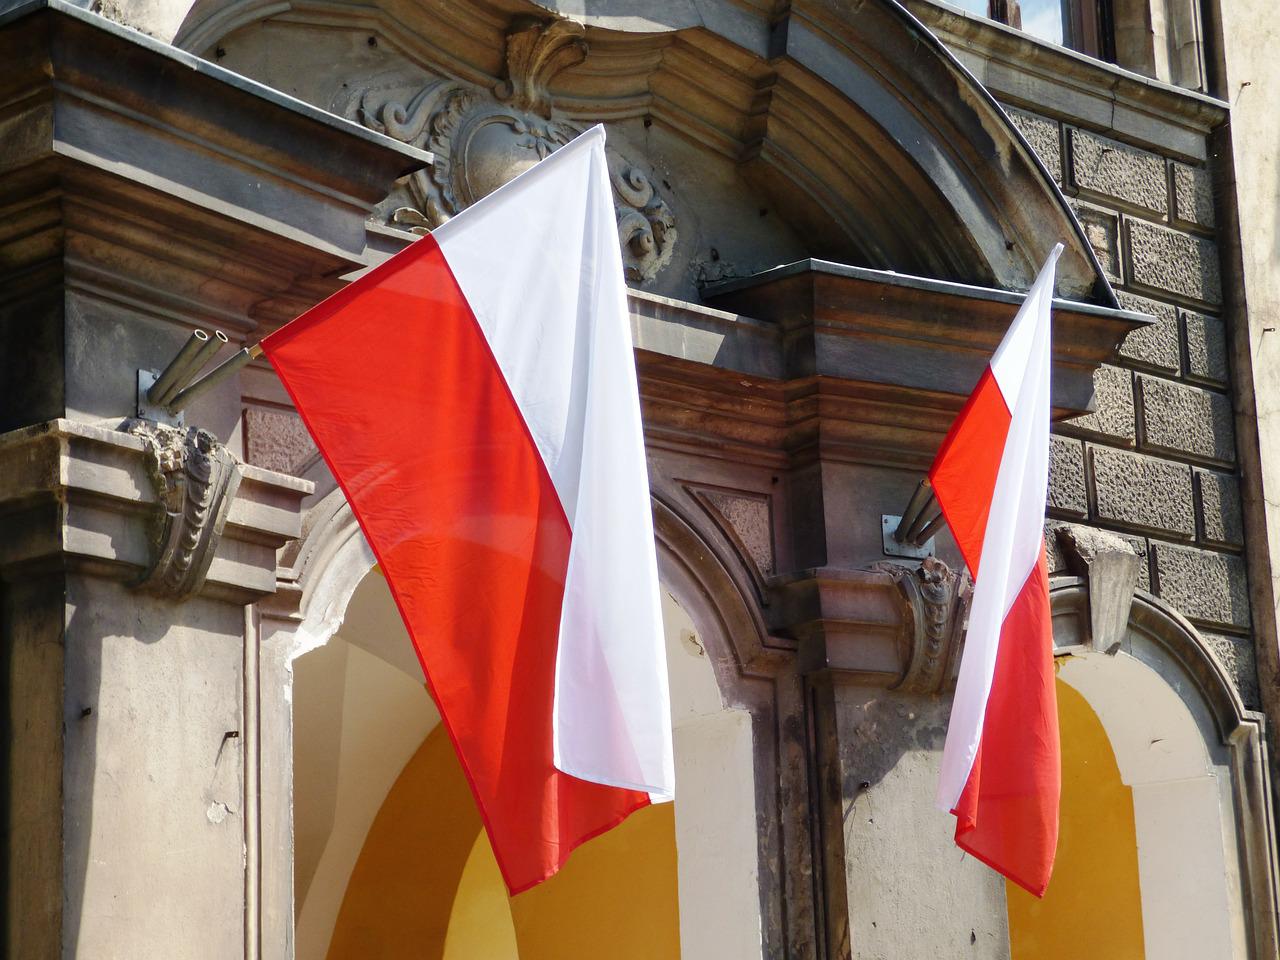 폴란드 국기